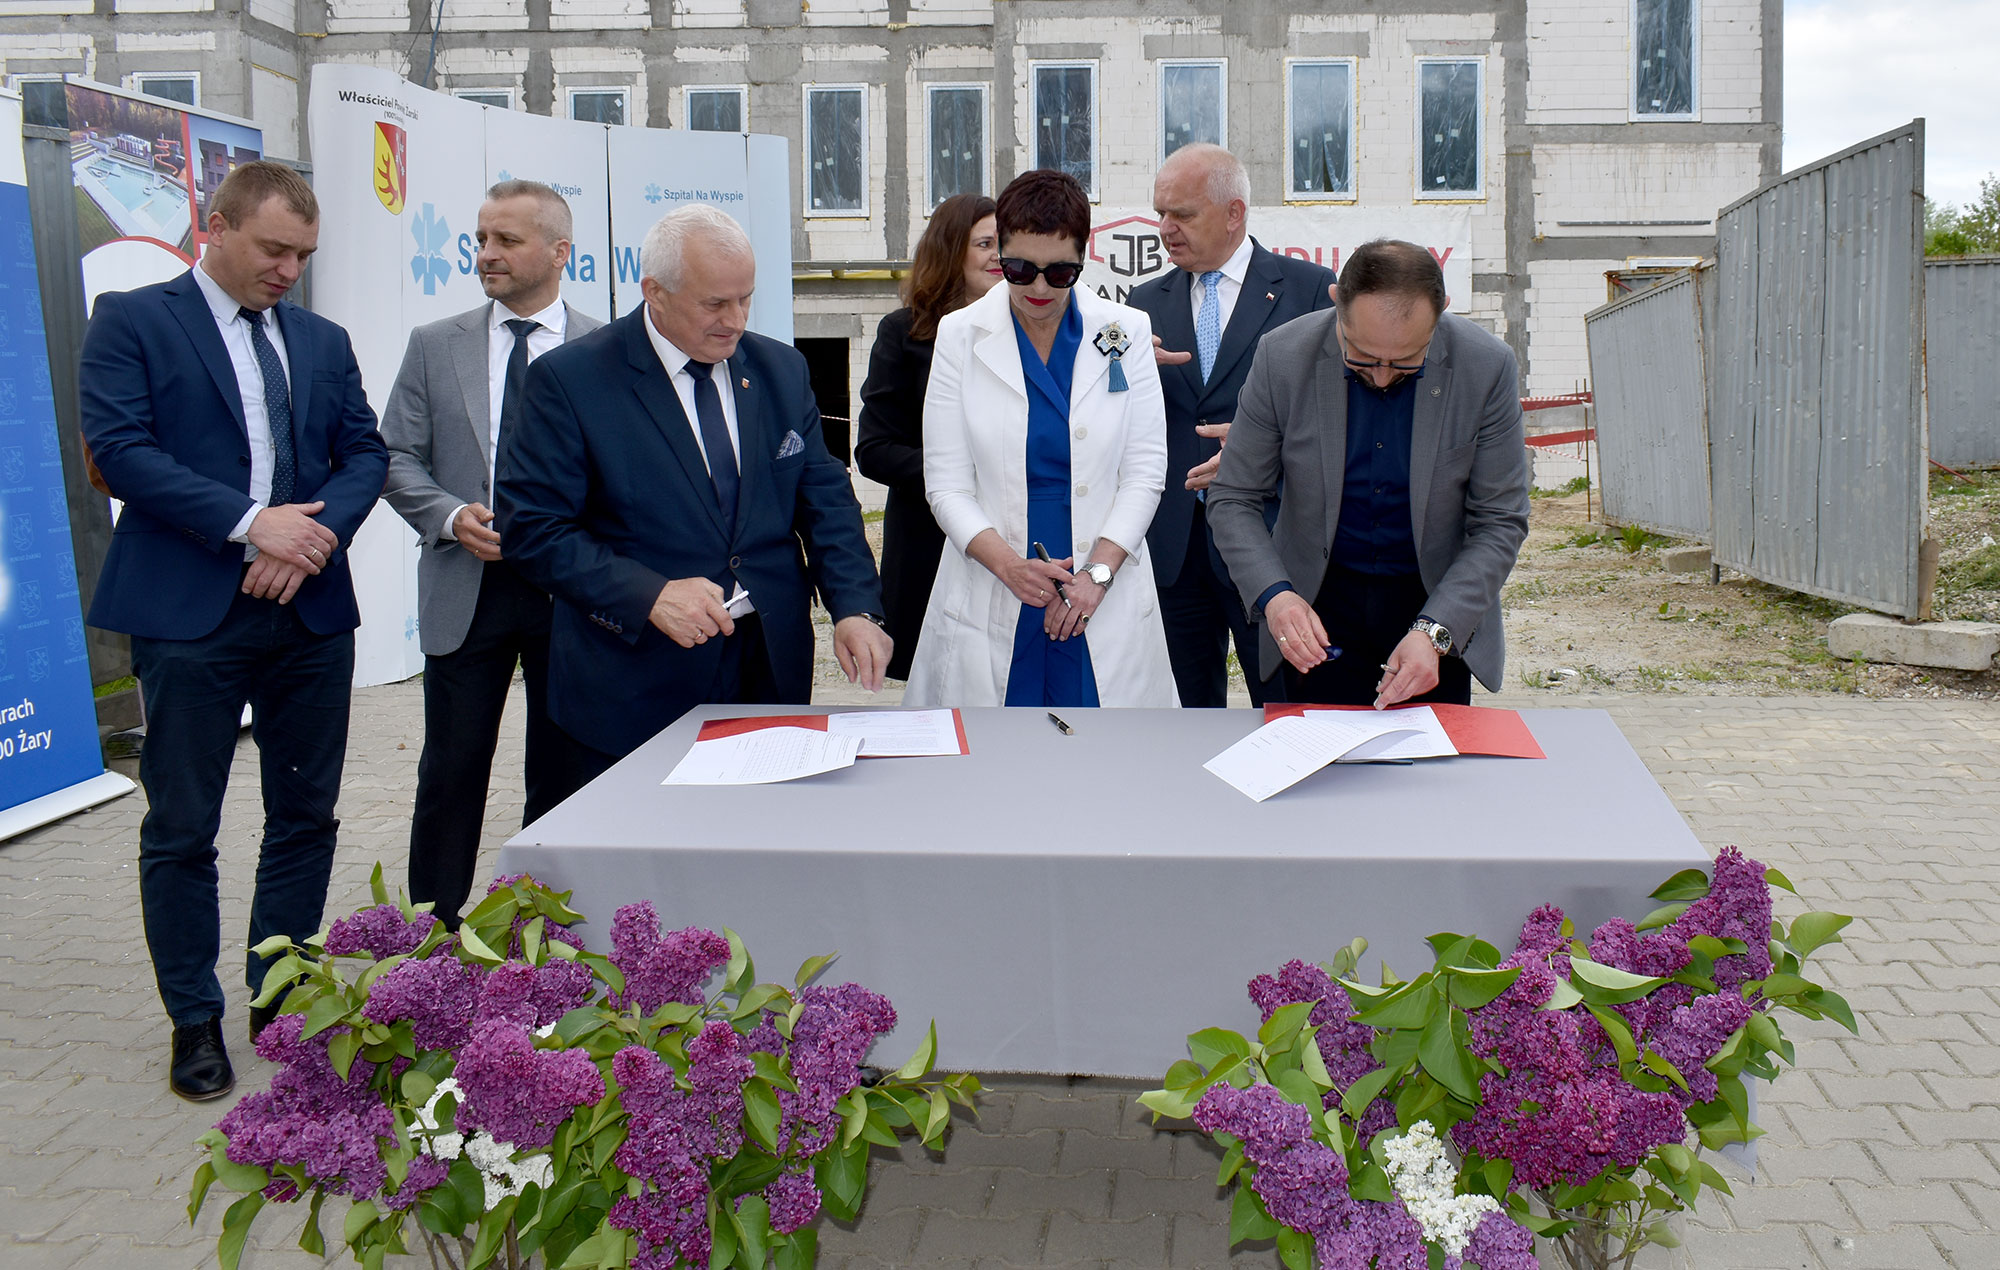 Ilustracja do informacji: Podpisanie umowy na rozbudowę budynku głównego szpitala Na Wyspie w Żarach - etap II.